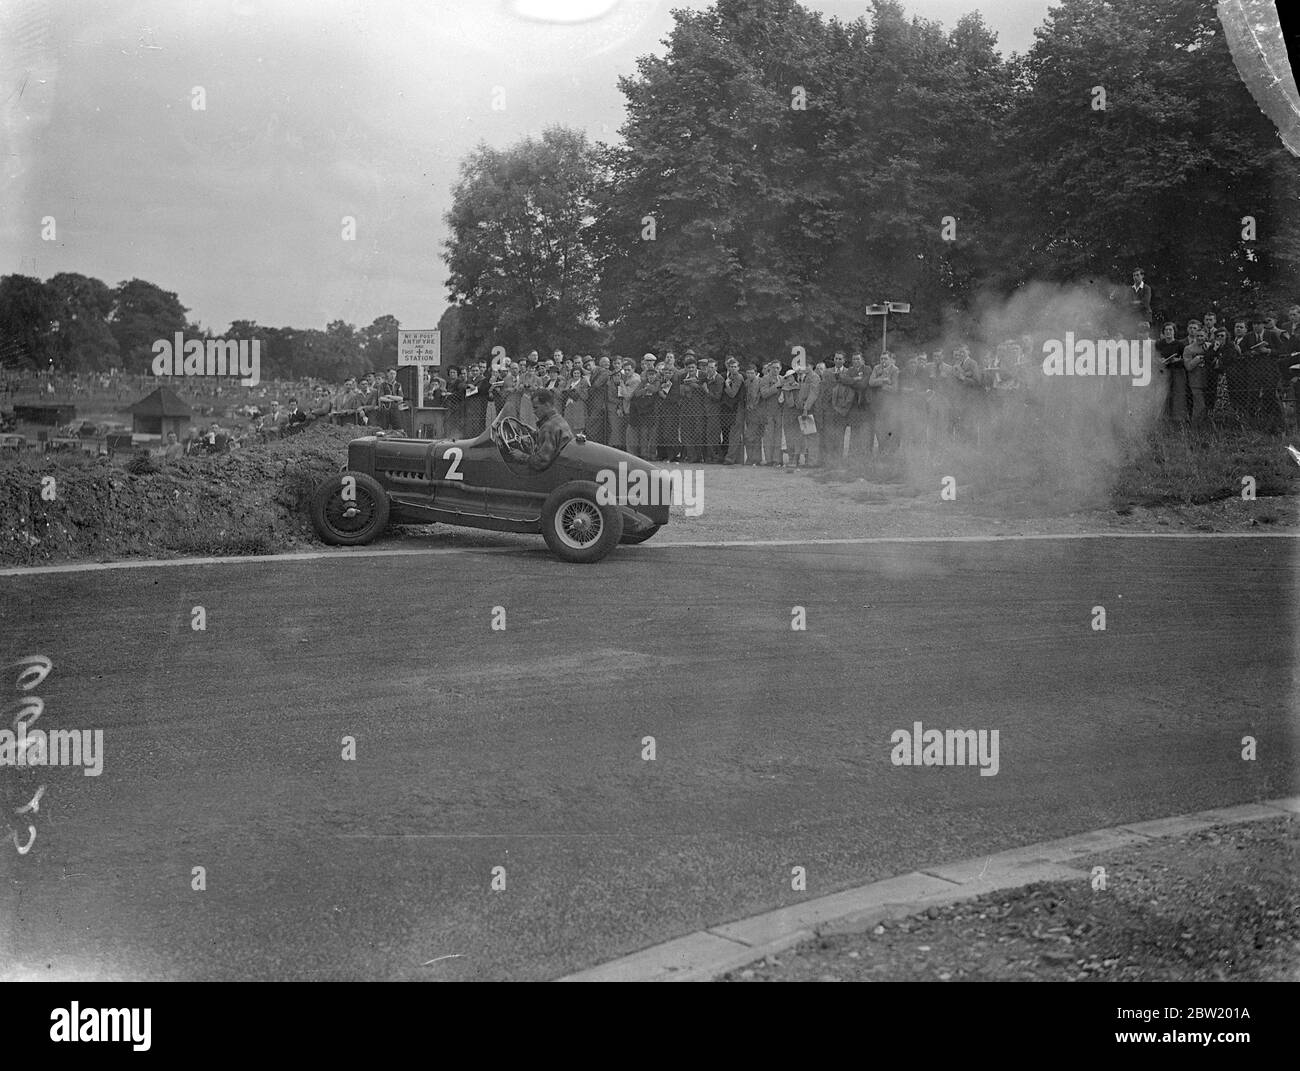 M. H. L. Brooke, volant d'un MG Riley, a de nouveau frappé la banque, exactement au même endroit qu'auparavant, pendant le Grand Prix de Londres sur le nouveau circuit de course de Crystal Palace. 17 juillet 1937 Banque D'Images